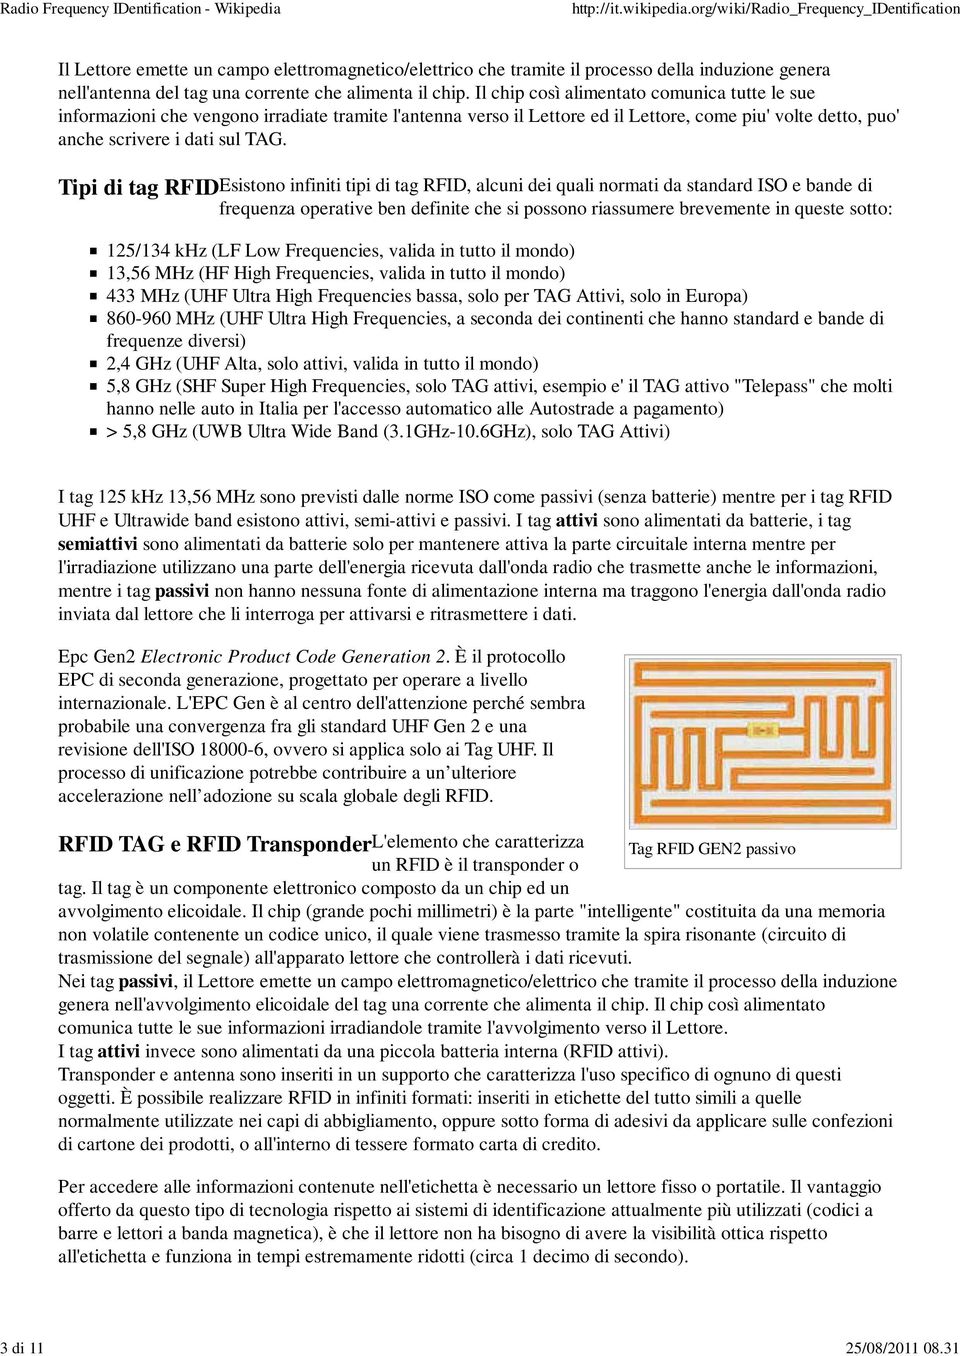 Tipi di tag RFID Esistono infiniti tipi di tag RFID, alcuni dei quali normati da standard ISO e bande di frequenza operative ben definite che si possono riassumere brevemente in queste sotto: 125/134